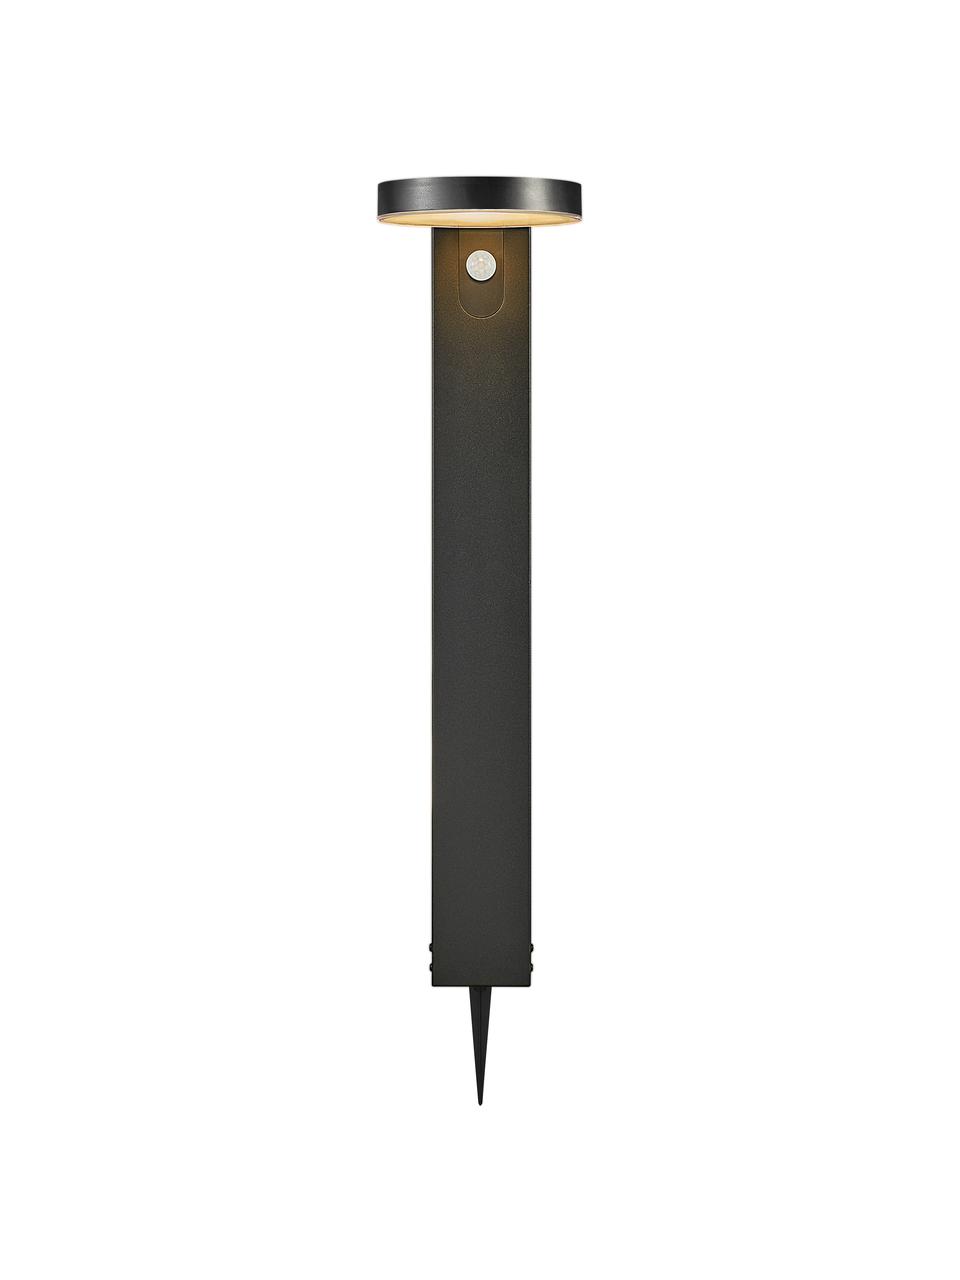 Solar padverlichting Rica met bewegingssensor, Lampenkap: kunststof, Lampvoet: gecoat staal, Zwart, B 15 cm x H 60 cm